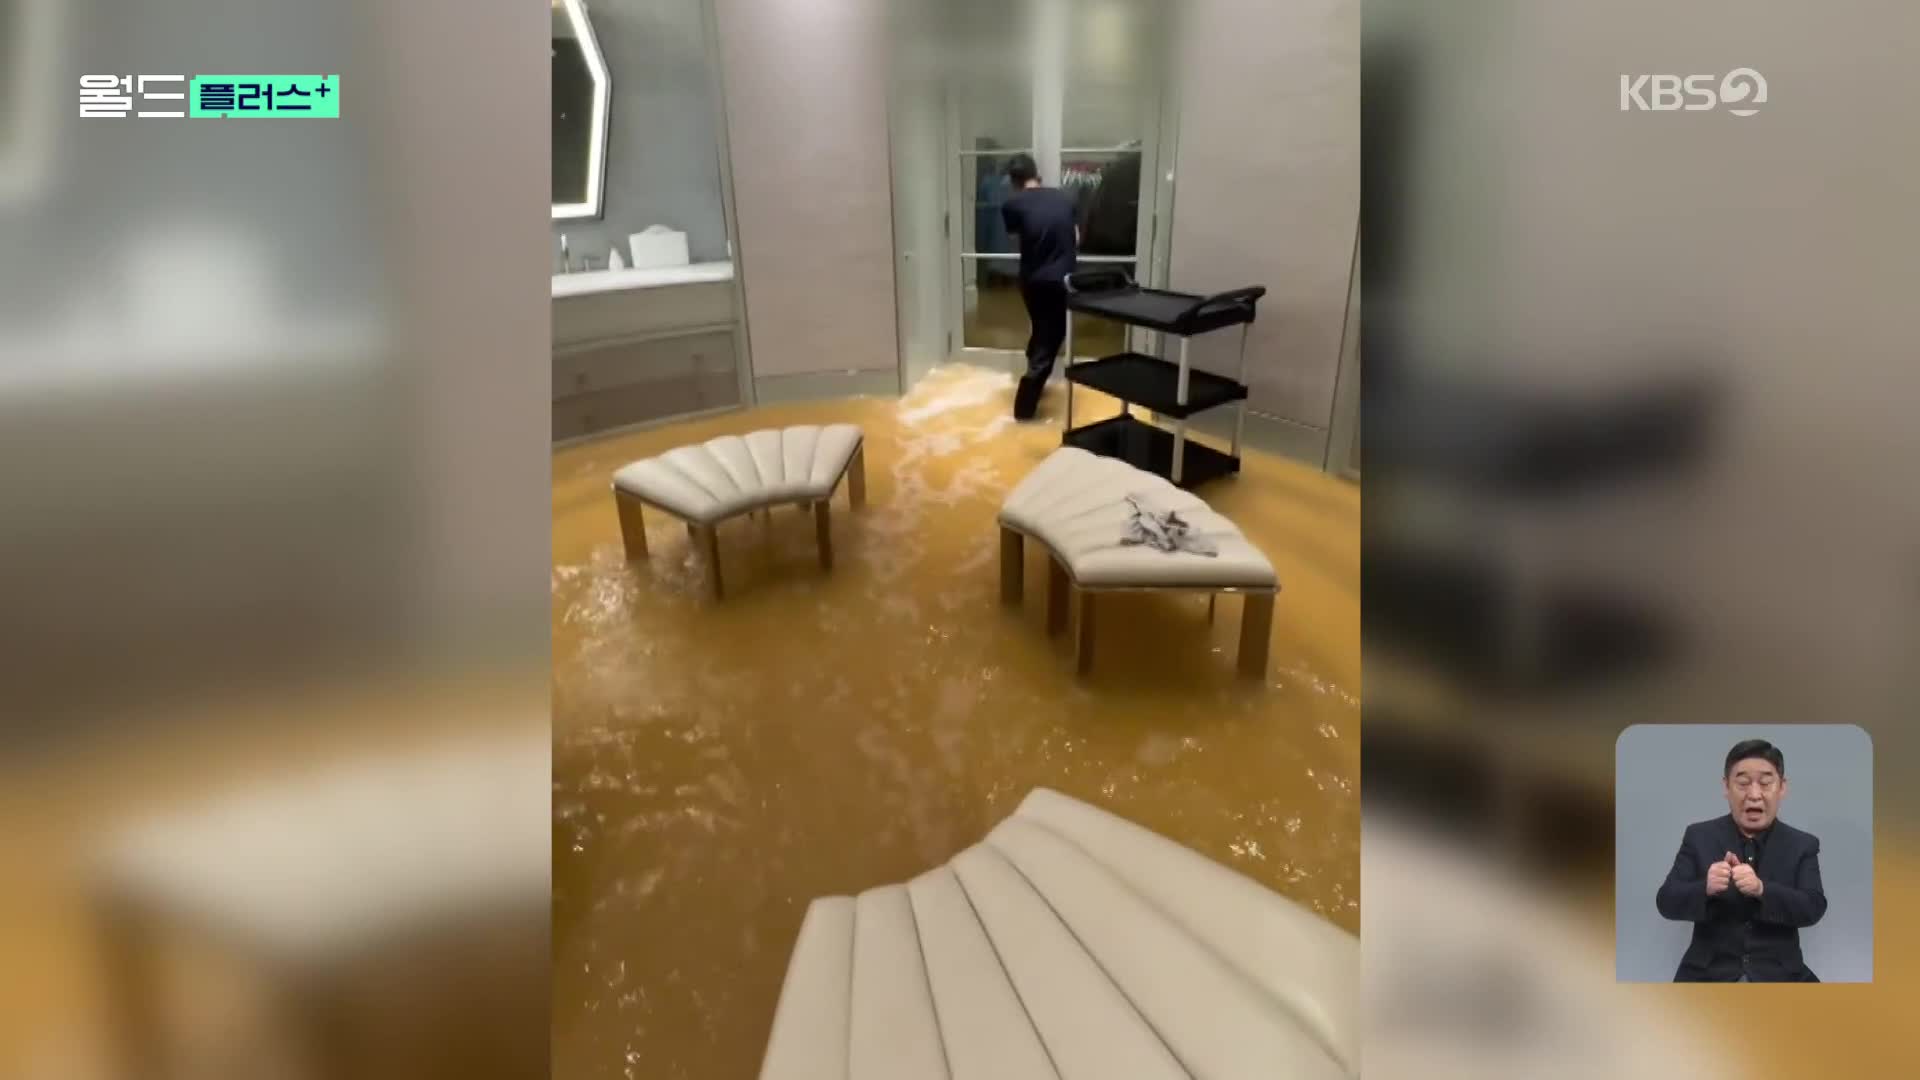 [월드 플러스] 유명 가수 집도 잠겼다…토론토 폭우 피해 잇따라